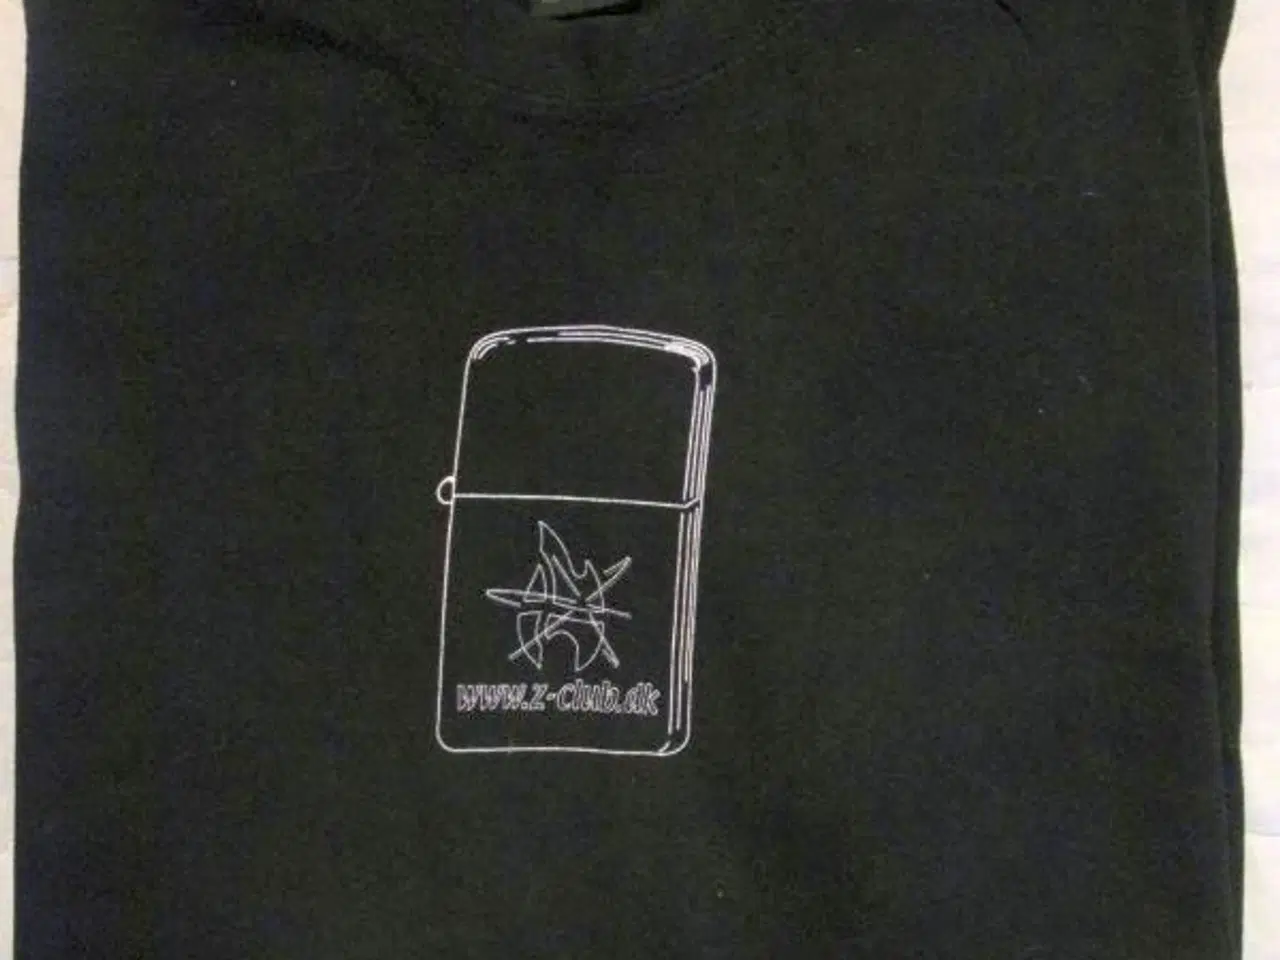 Billede 1 - T-shirt fra zippo klubben i Danmark